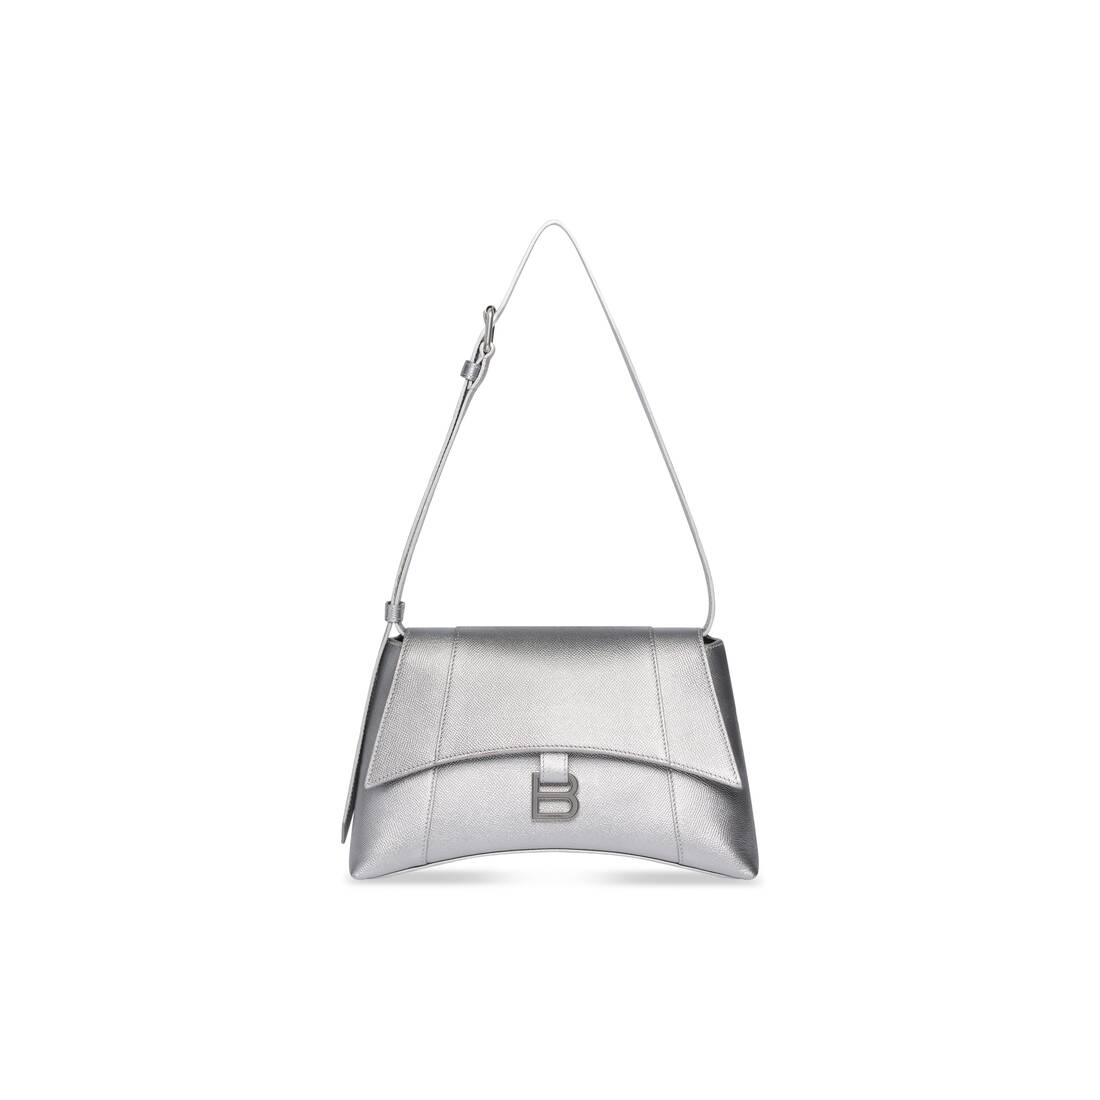 Balenciaga Silver Hourglass Shoulder Bag Balenciaga